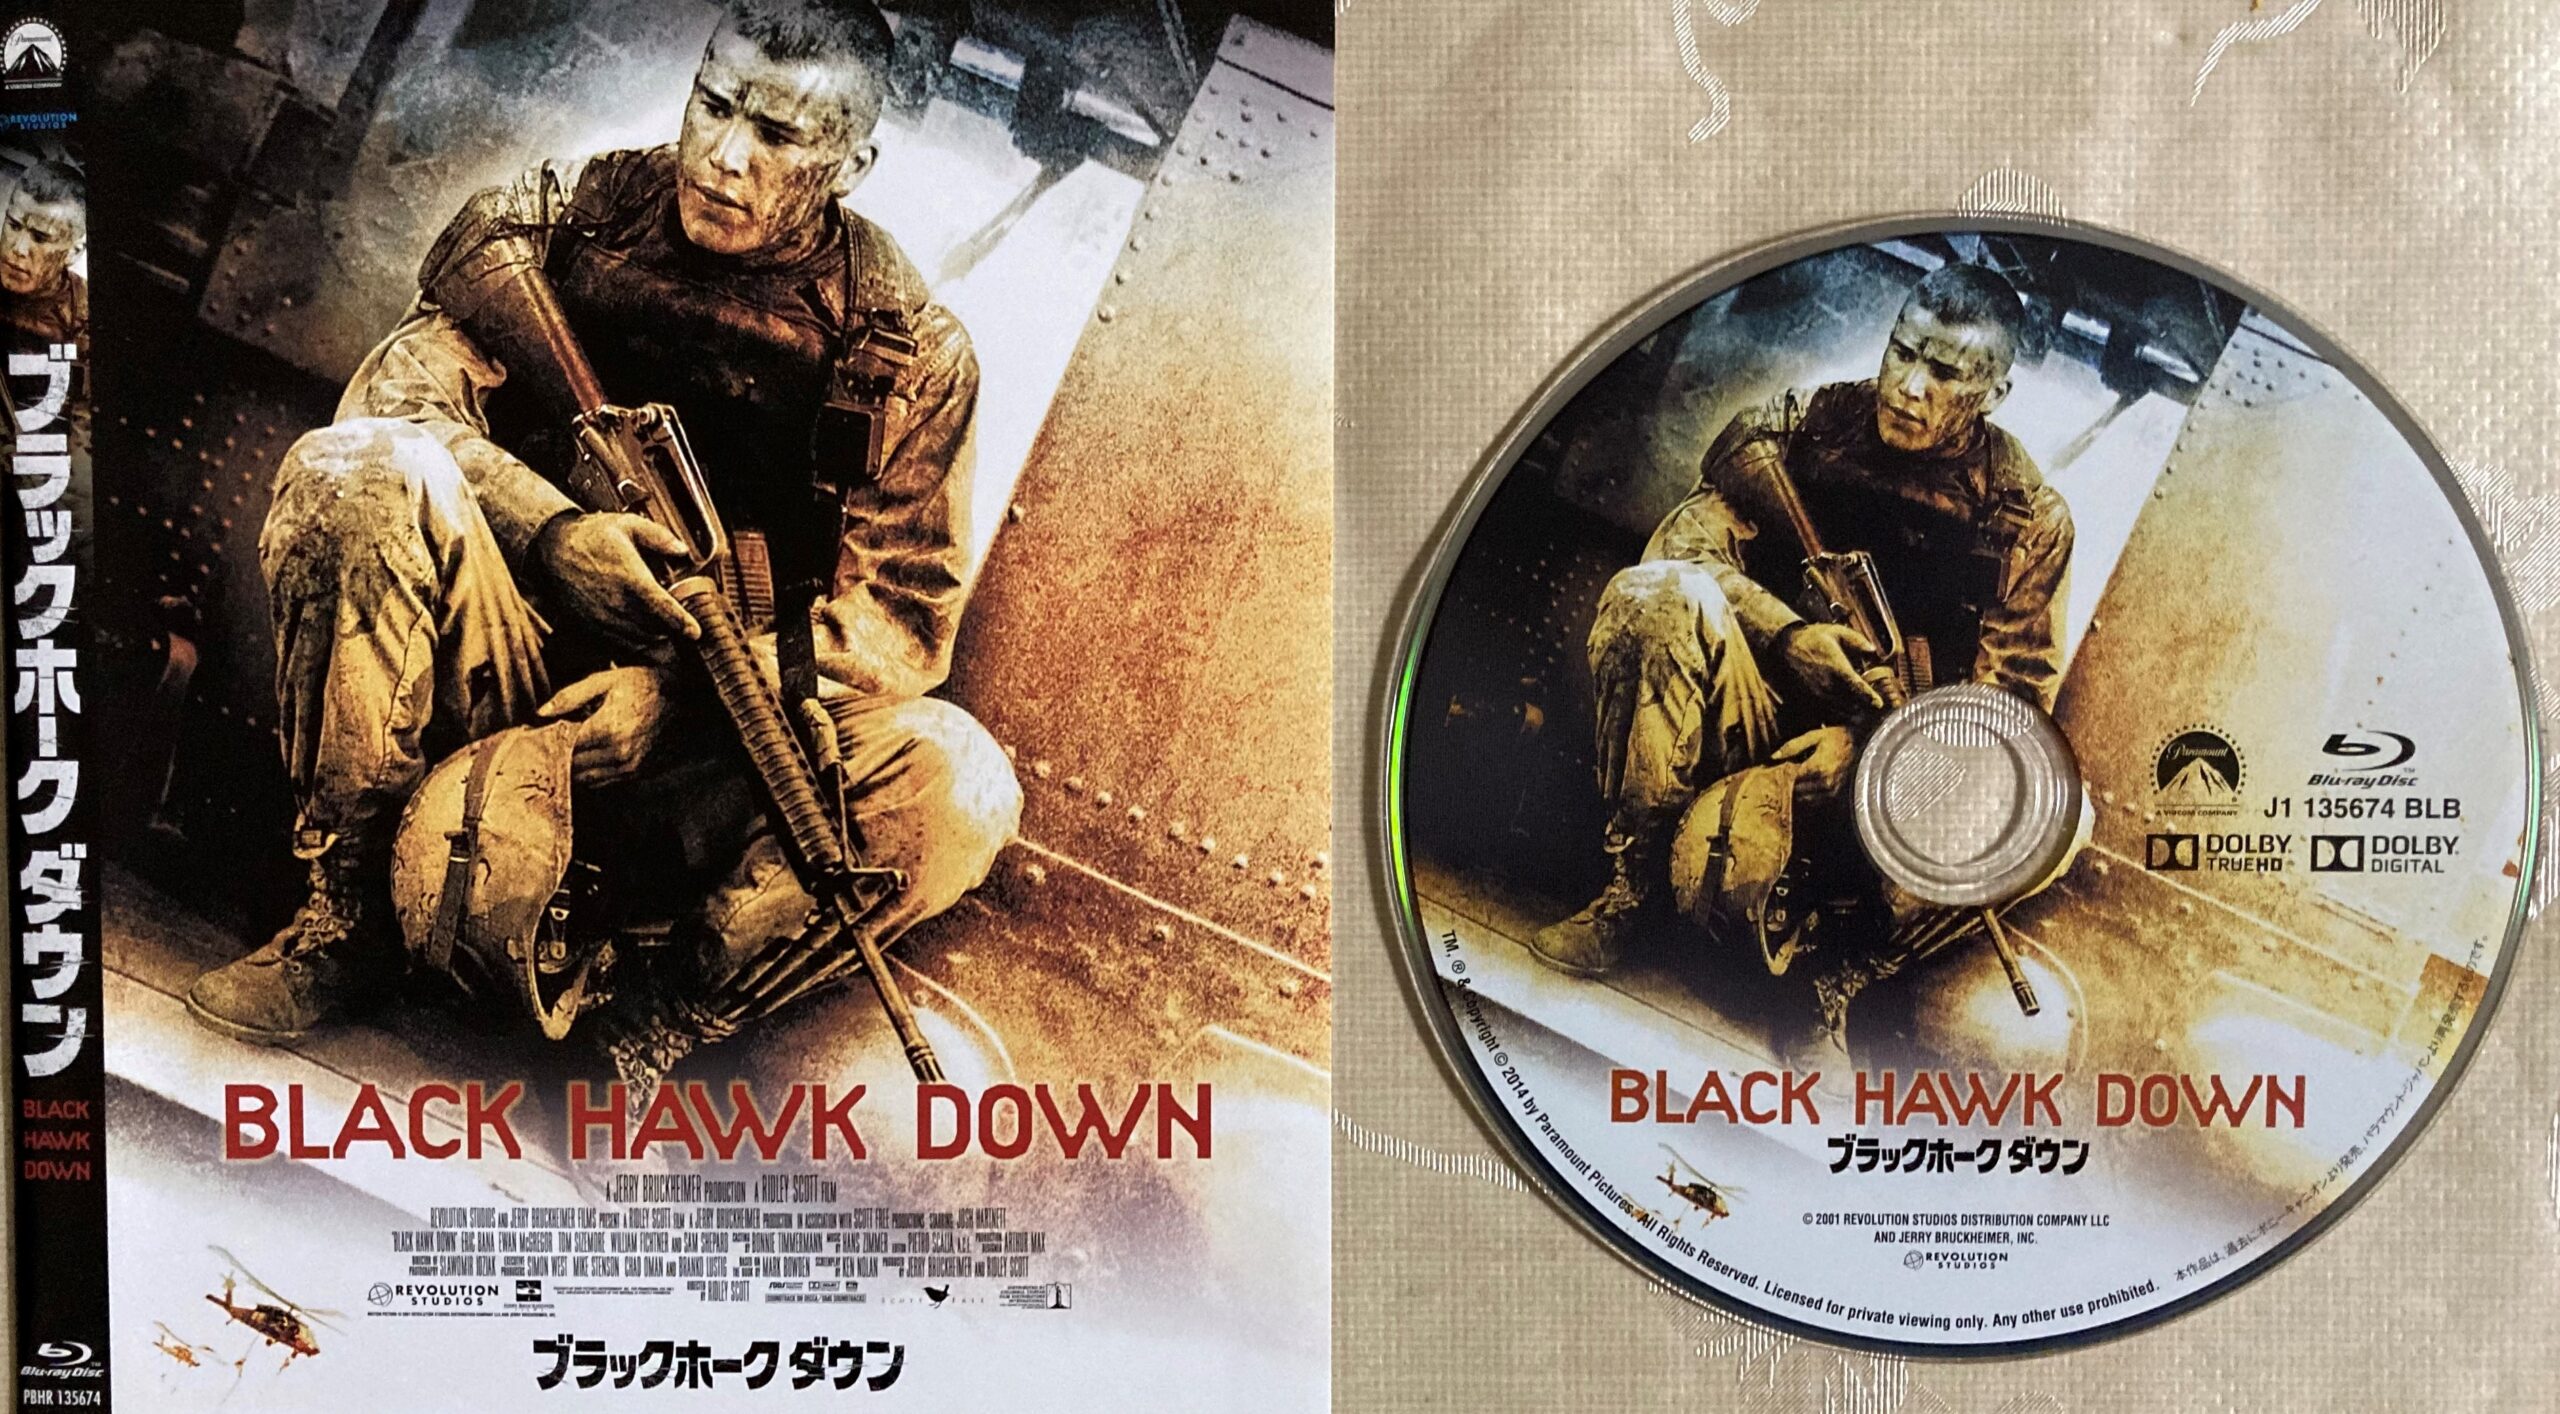 紹介した映画のブルーレイのジャケット写真とブルーレイのディスク本体を並べて写した写真